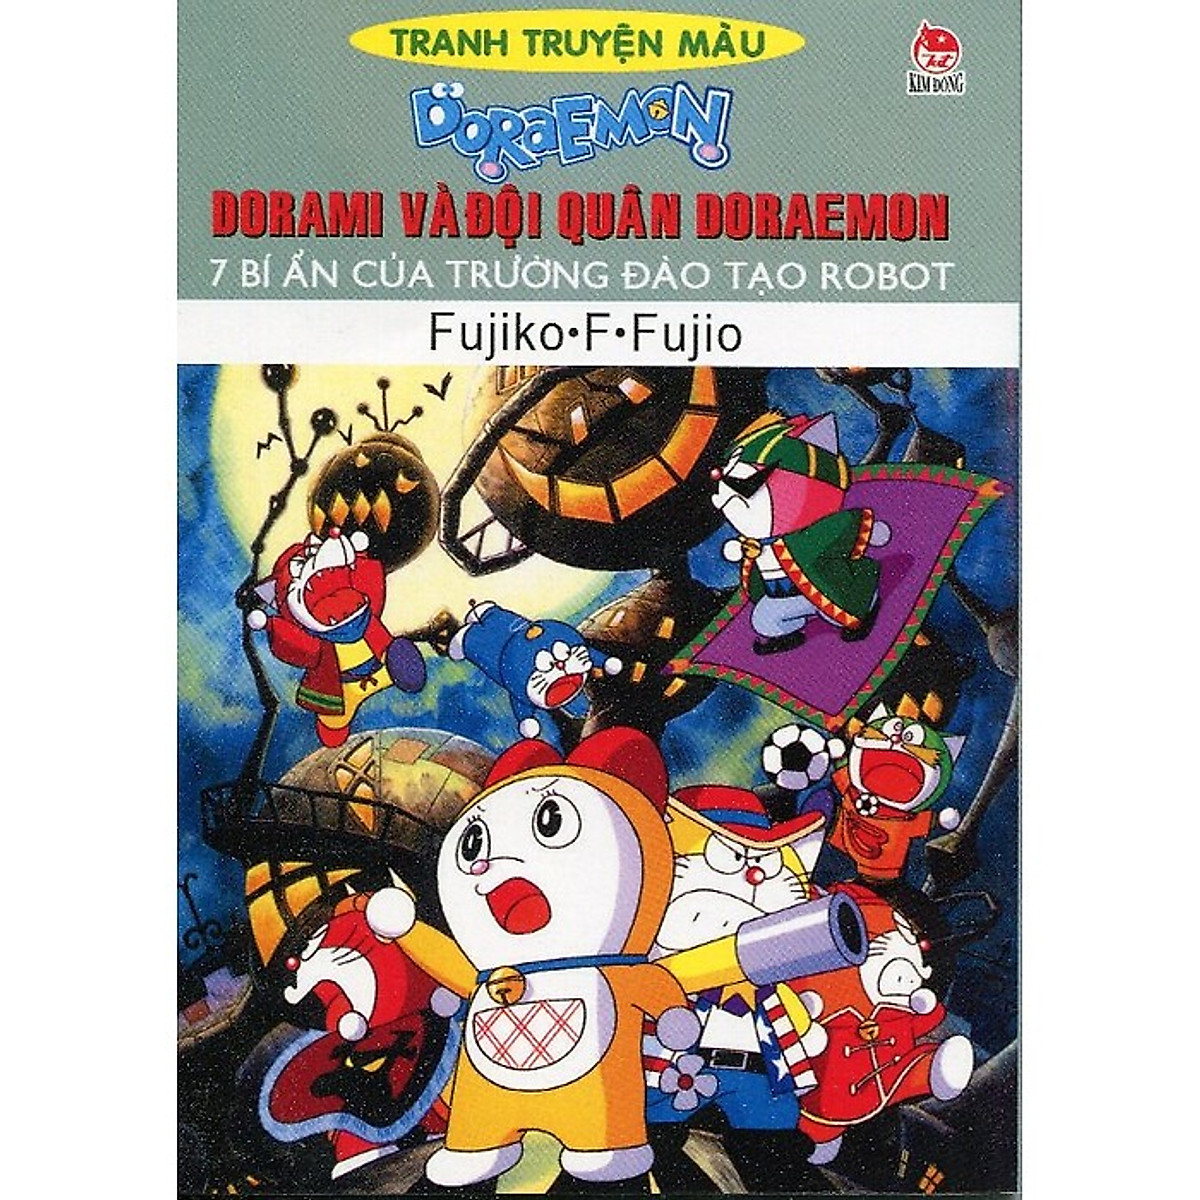 Doraemon Truyện Tranh Màu - Dorami Và Đội Quân Doraemon - 7 Bí Ẩn Của Trường Đào Tạo Robot (Tái Bản)